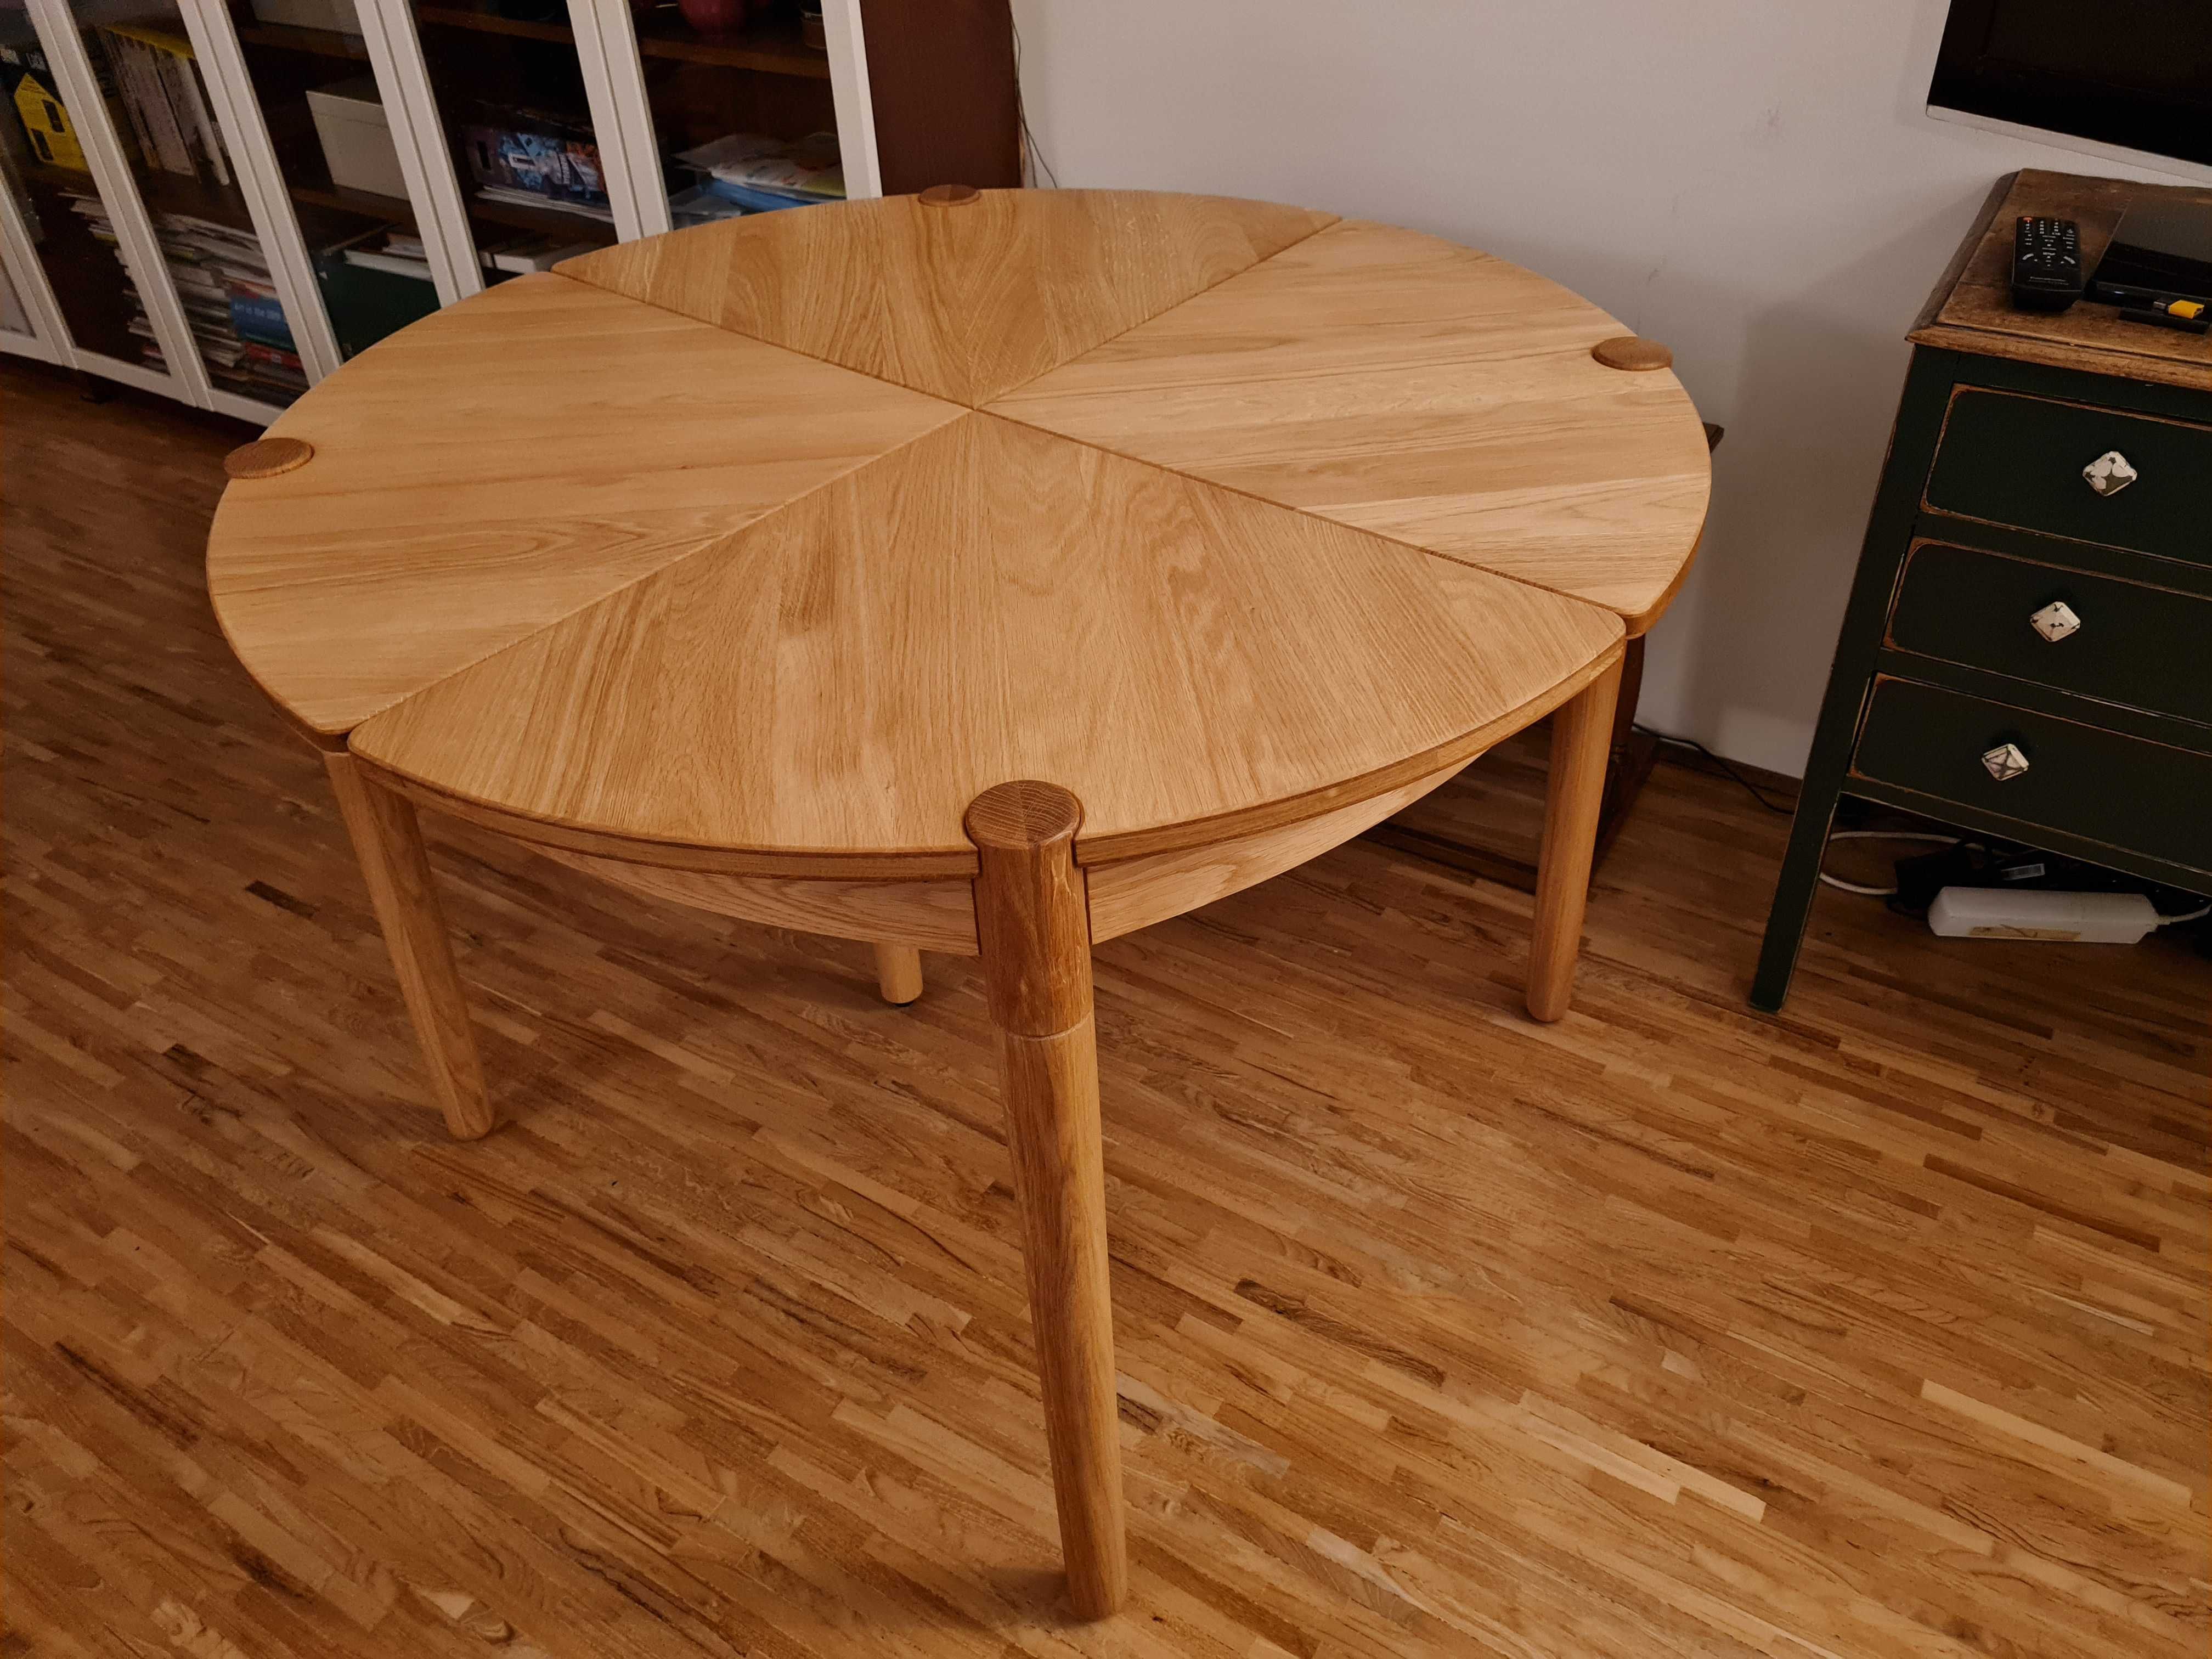 Nowy stół rozkładany Bolia FUSION dąb olejowany design drewniany